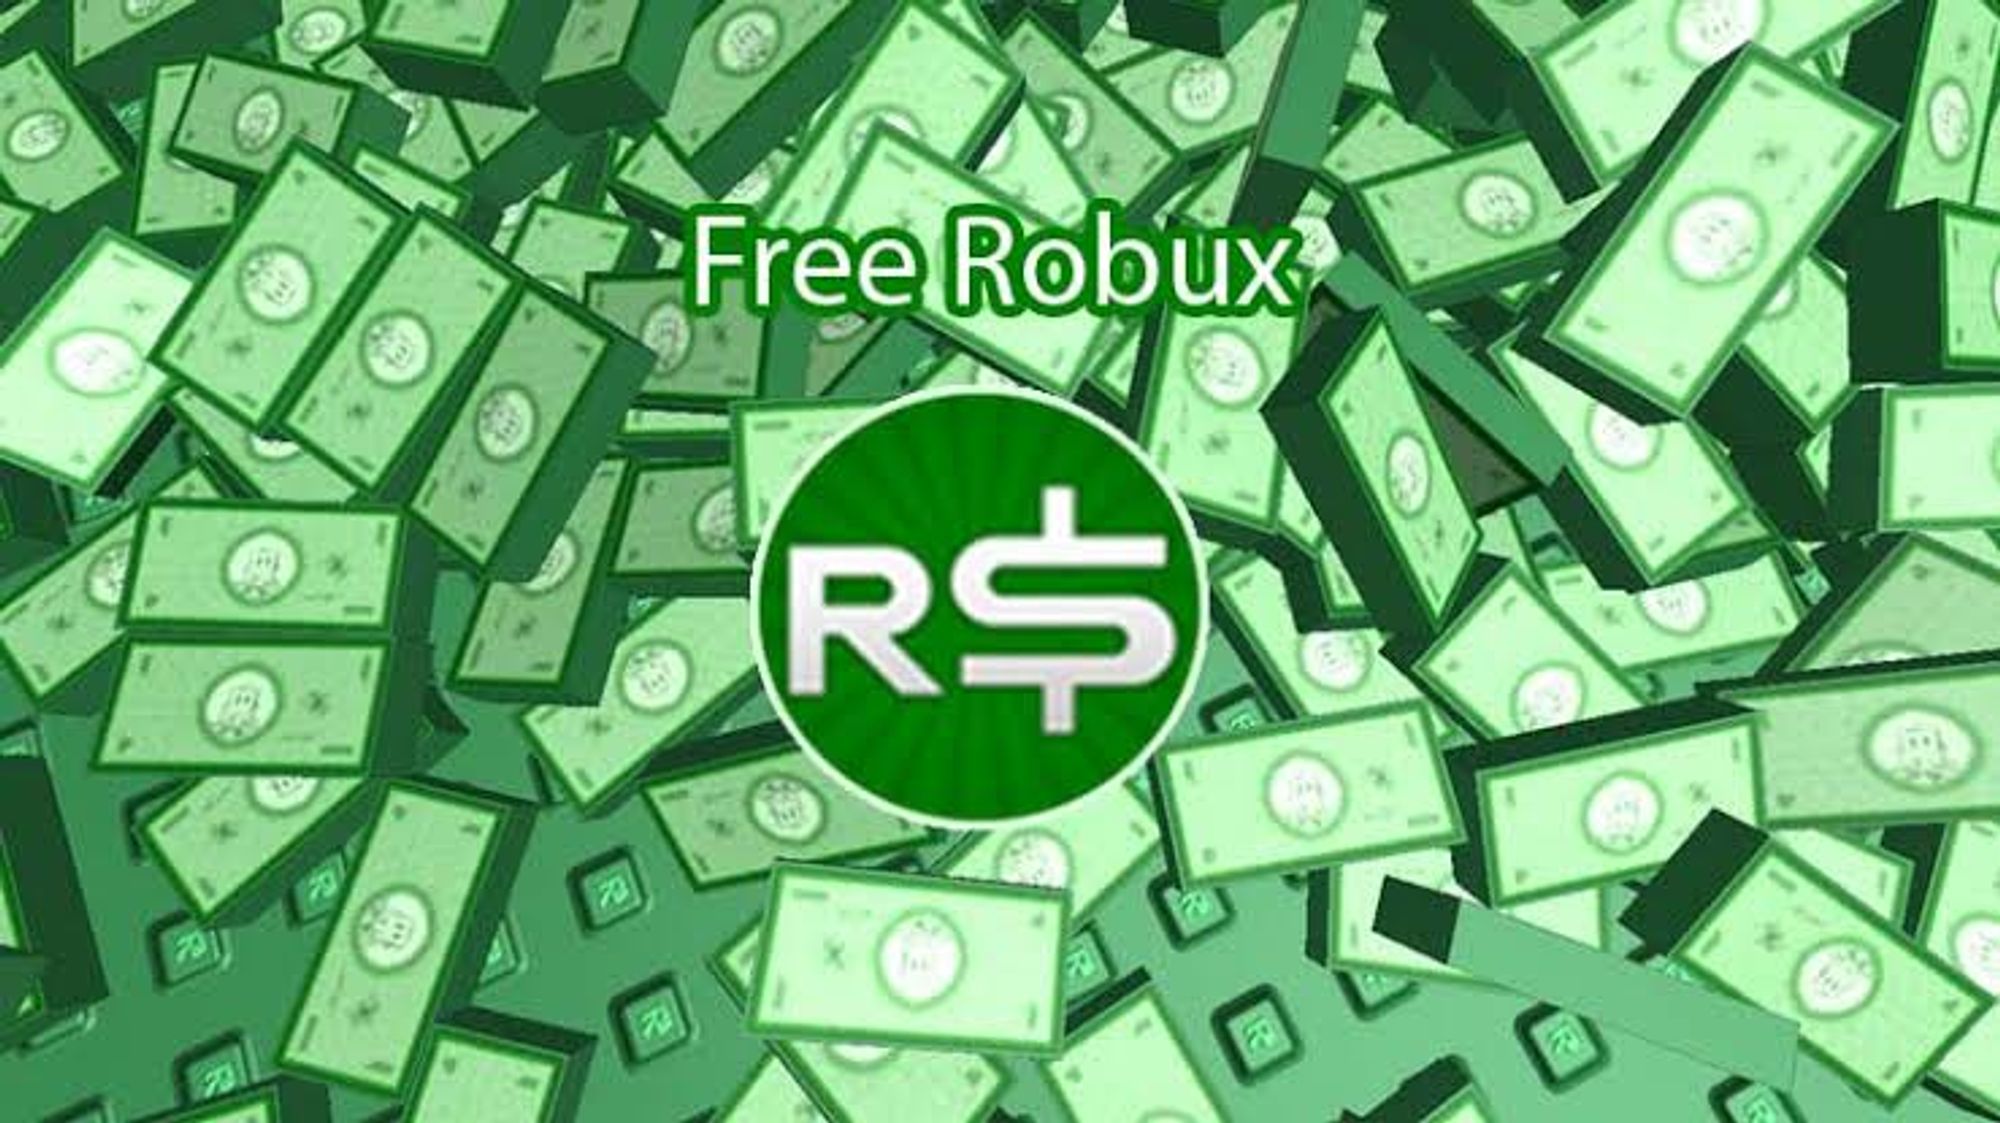 Free Robux Roblox Free Robux Generator 999k Robux Free V10 1